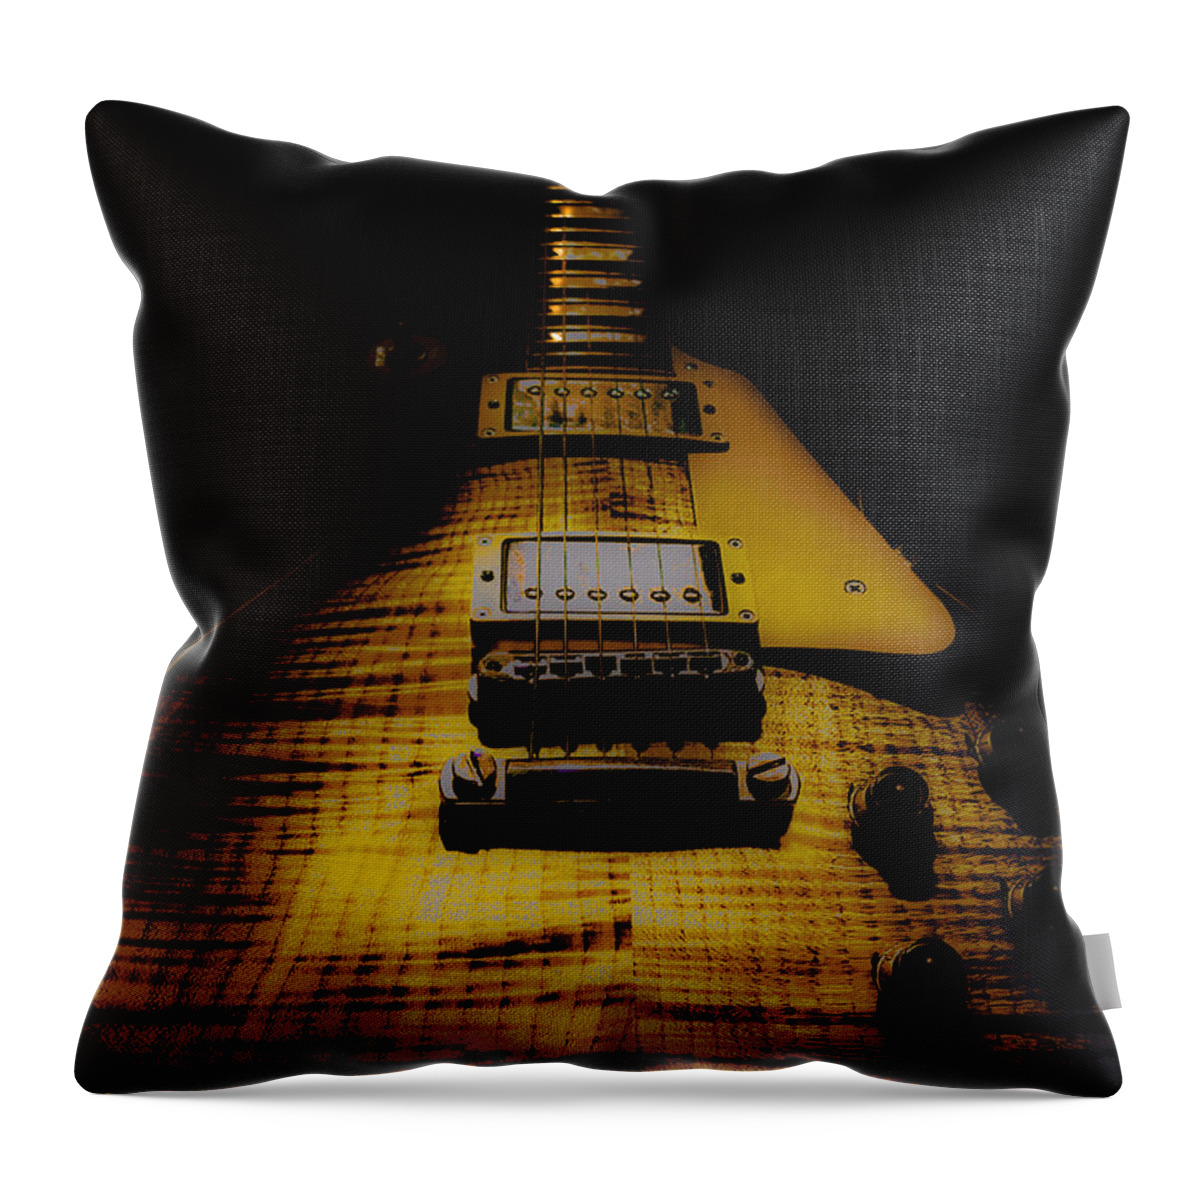 Guitar Throw Pillow featuring the digital art 1958 Reissue Guitar Spotlight Series by Guitarwacky Fine Art